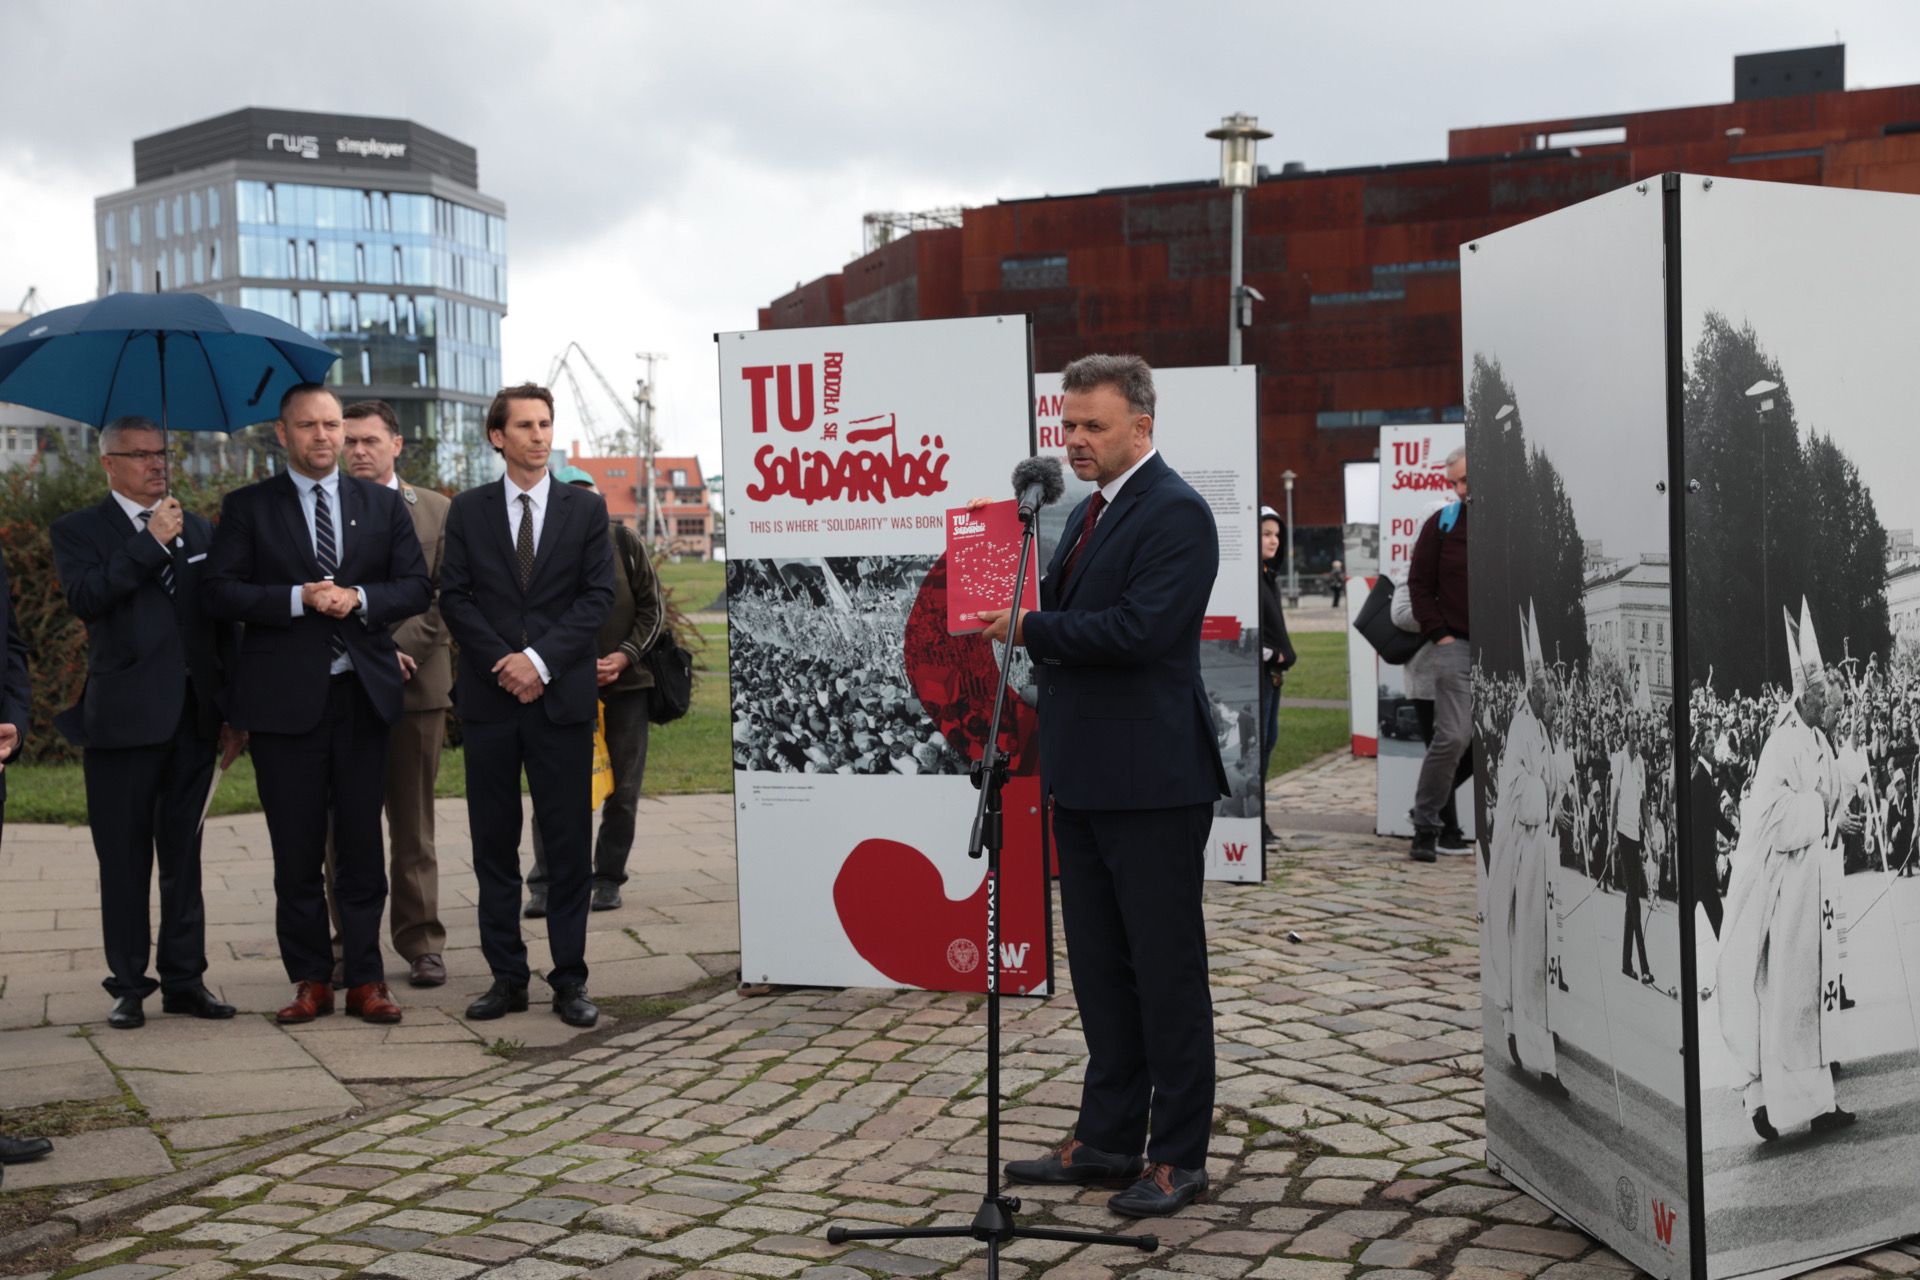 Wystąpienie Adama Hlebowicza, dyrektora BEN IPN, podczas prezentacji wystawy IPN „TU rodziła się Solidarność” na placu Solidarności w Gdańsku – 31 sierpnia 2021. Fot. Mikołaj Bujak (IPN)